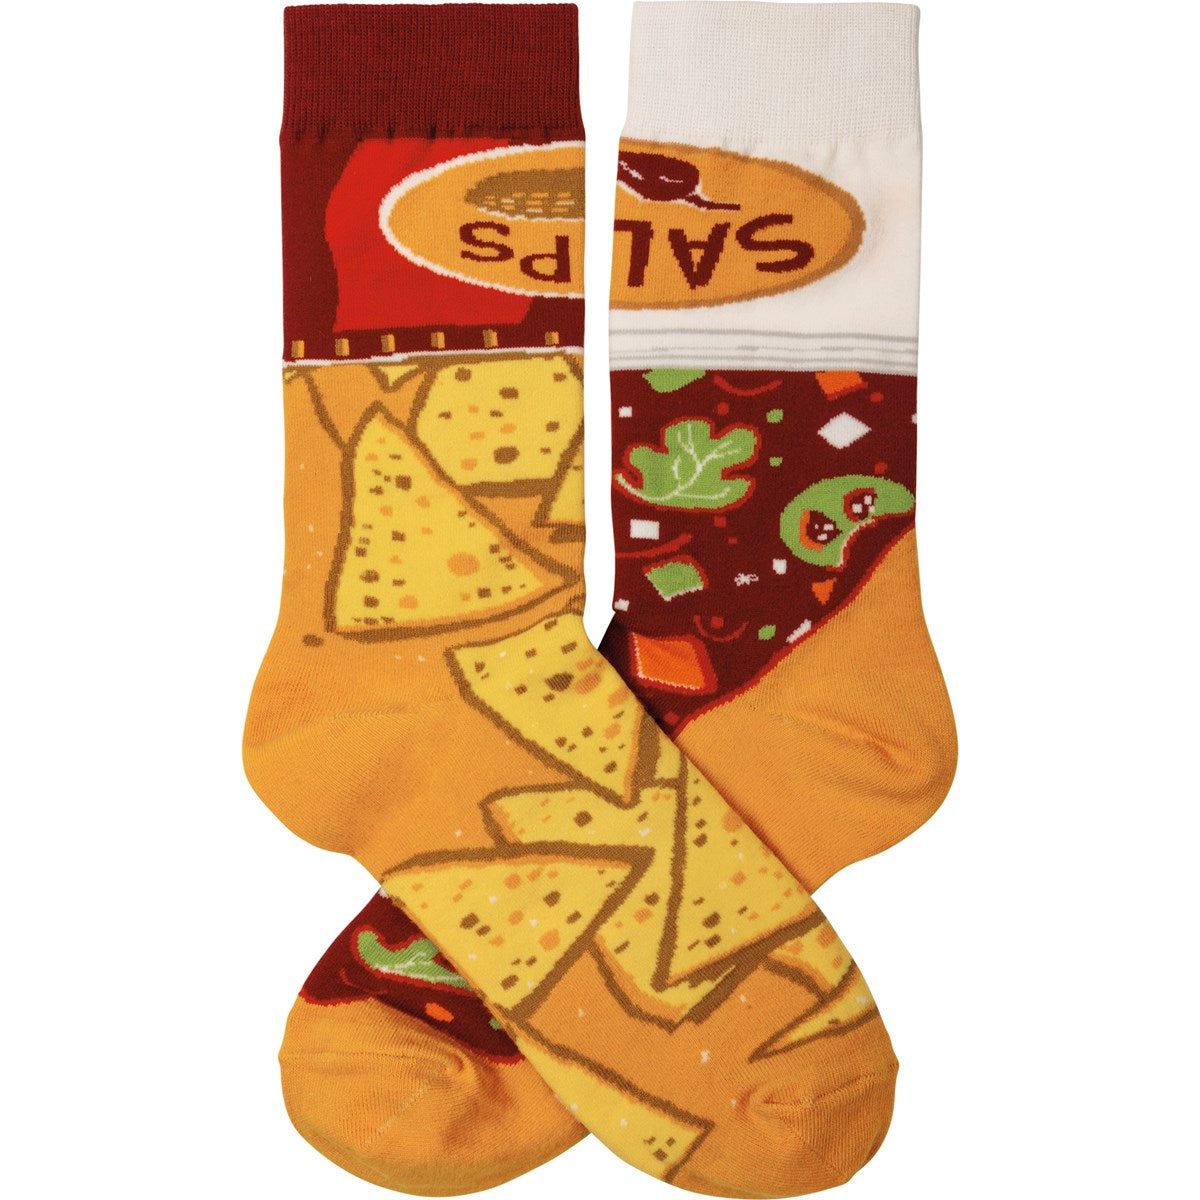 Chips & Salsa Socks